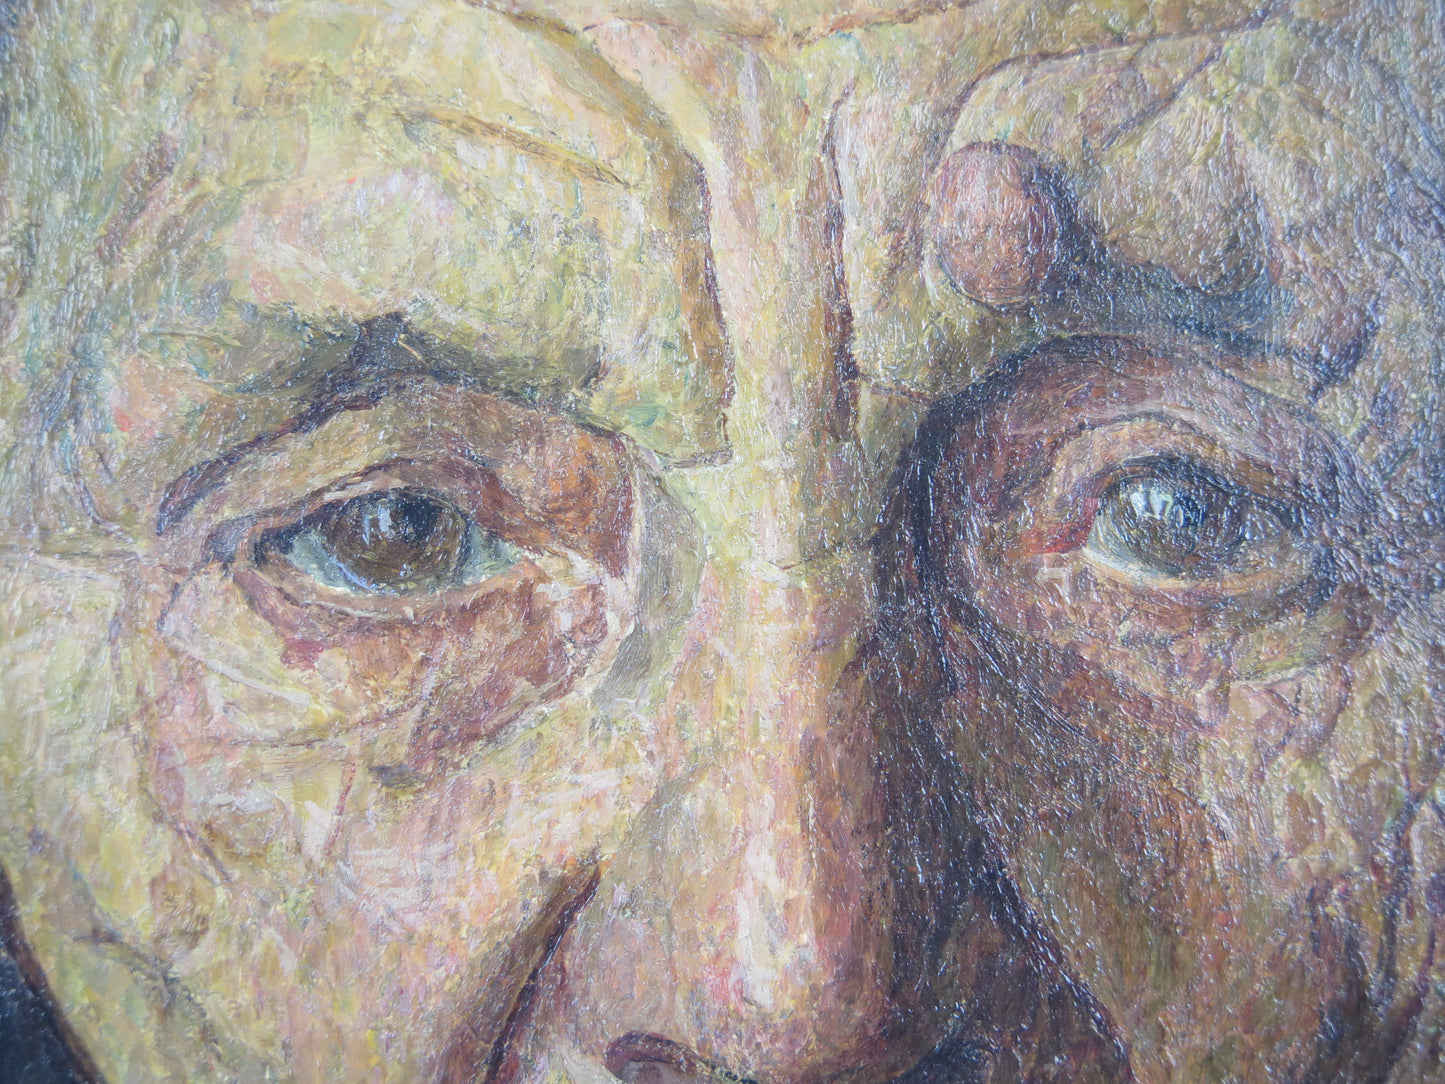 Quattro ritratti opera di pittori piemontesi Anacleto Laretto Giuseppe Manzone quadro antico dipinto ad olio firmato con cornice legno x7 x8